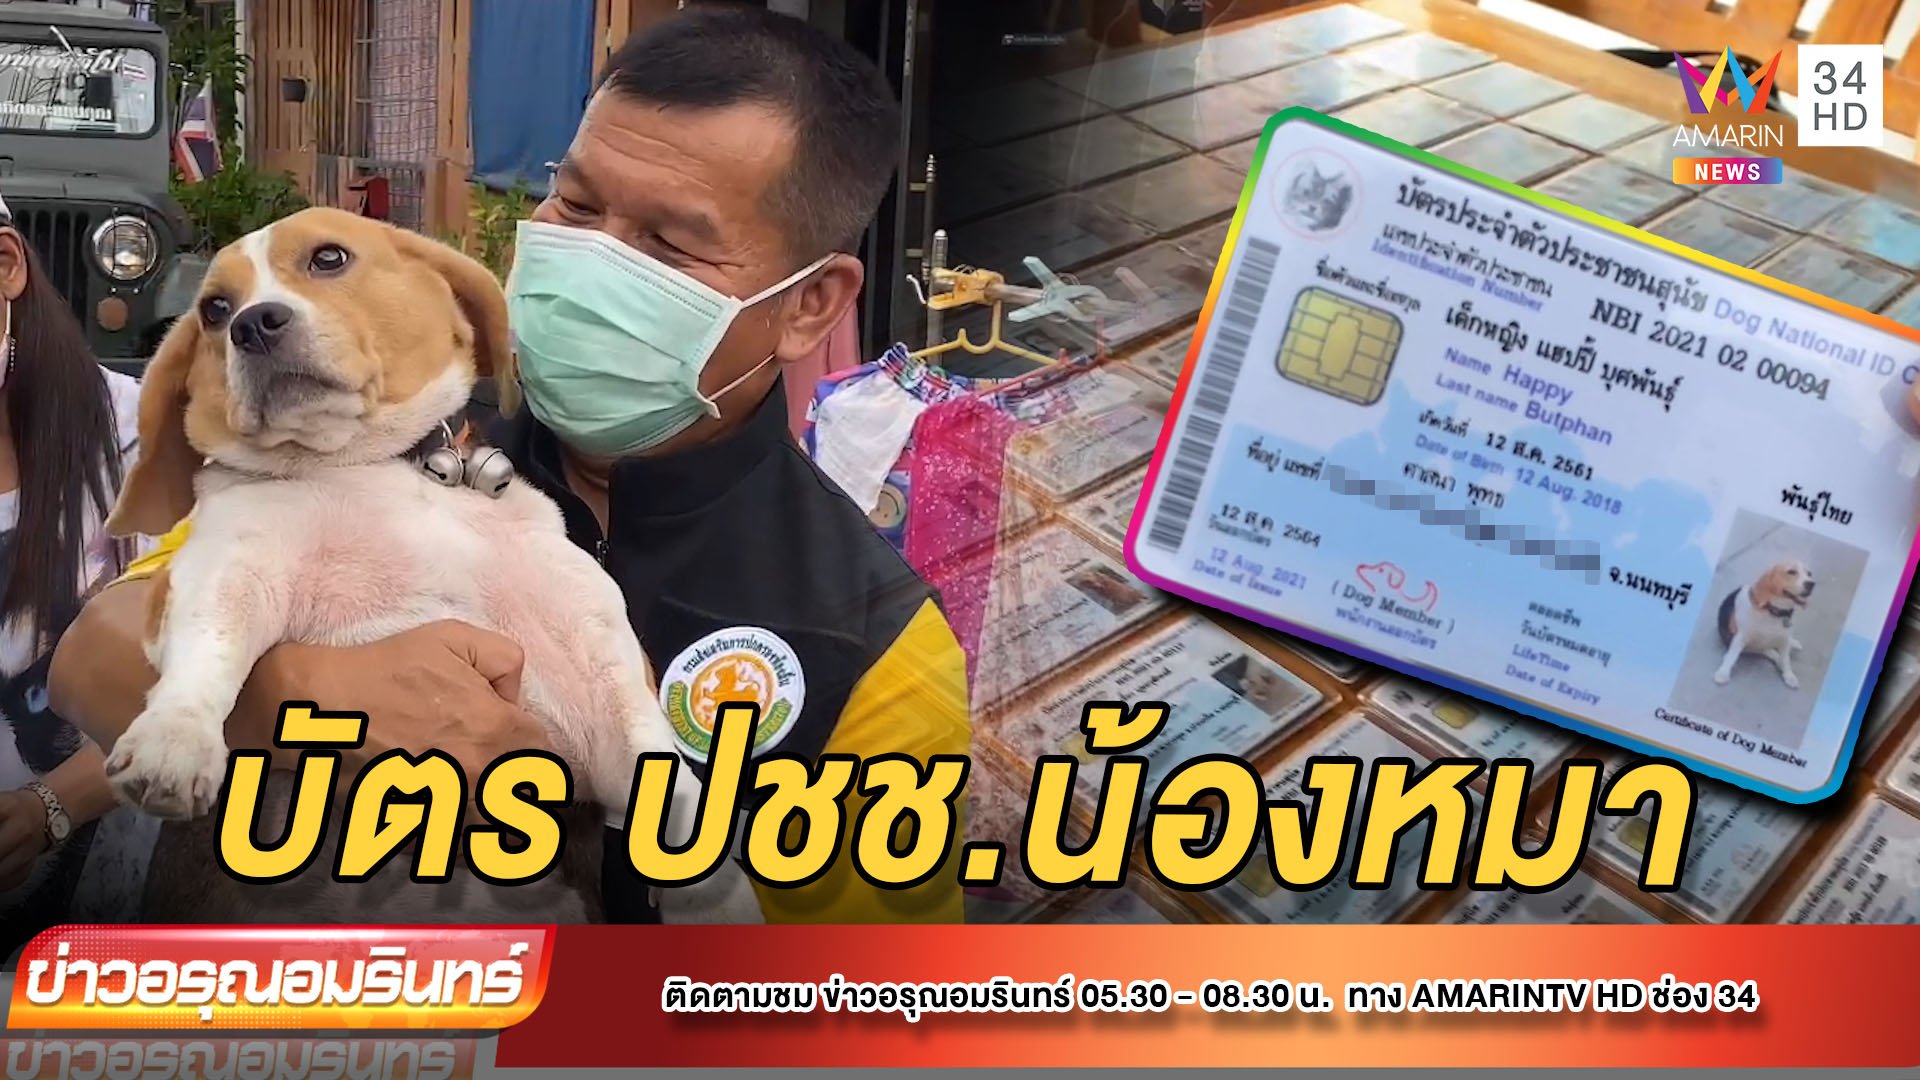 ที่เดียวในโลก! แจกบัตรประชาชนน้องหมาถึงหน้าบ้าน | ข่าวอรุณอมรินทร์ | 27 ส.ค. 64 | AMARIN TVHD34